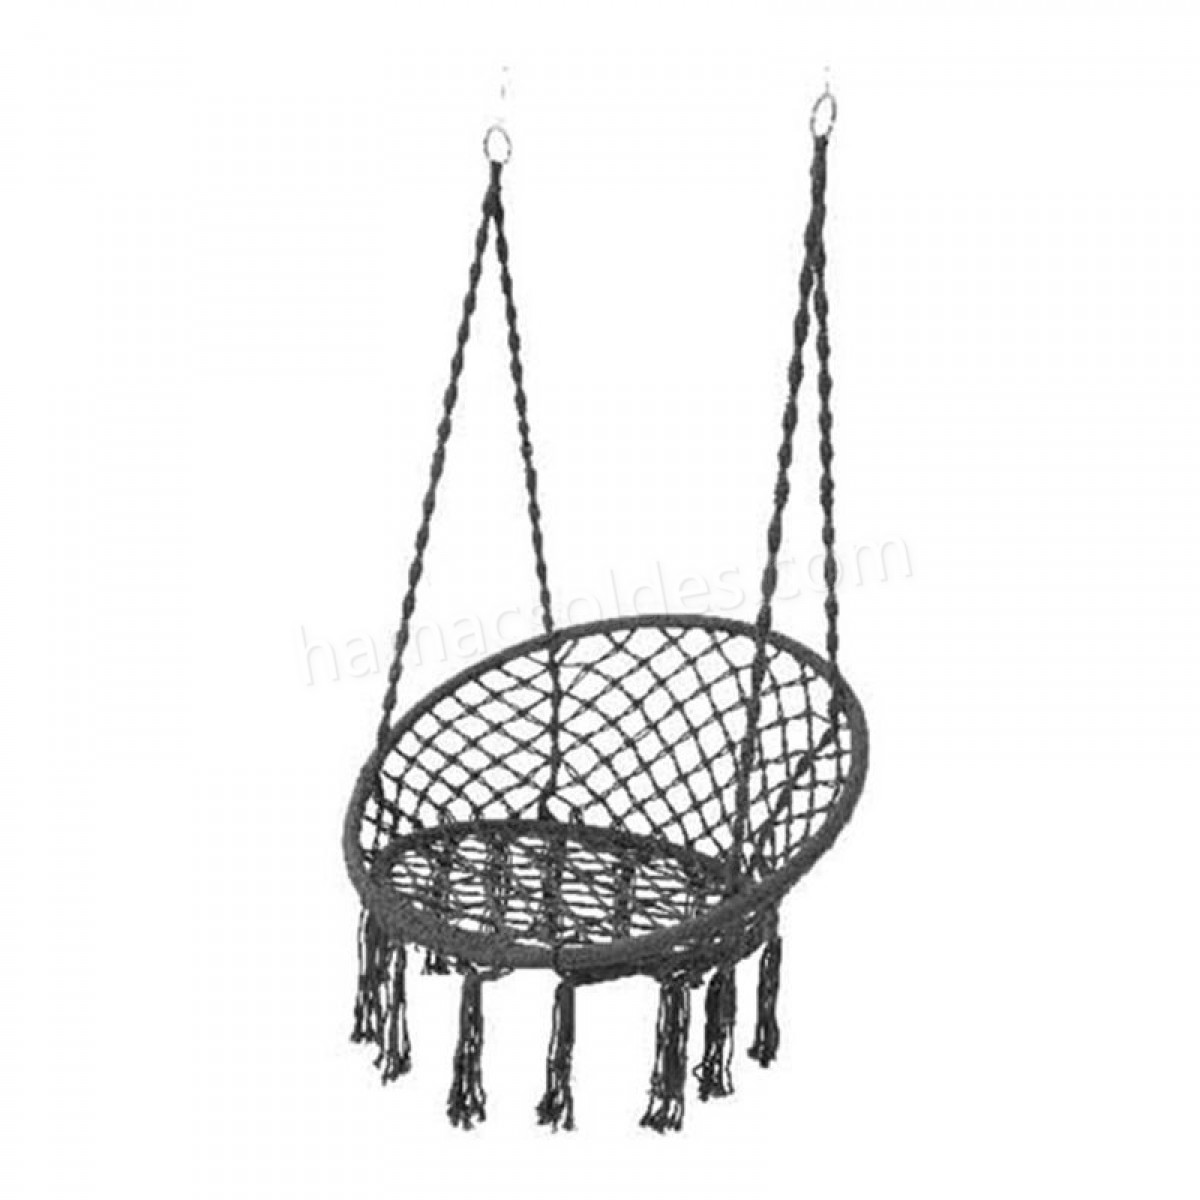 Soldes en ligne Chaise hamac avec franges - gris - Soldes en ligne Chaise hamac avec franges - gris